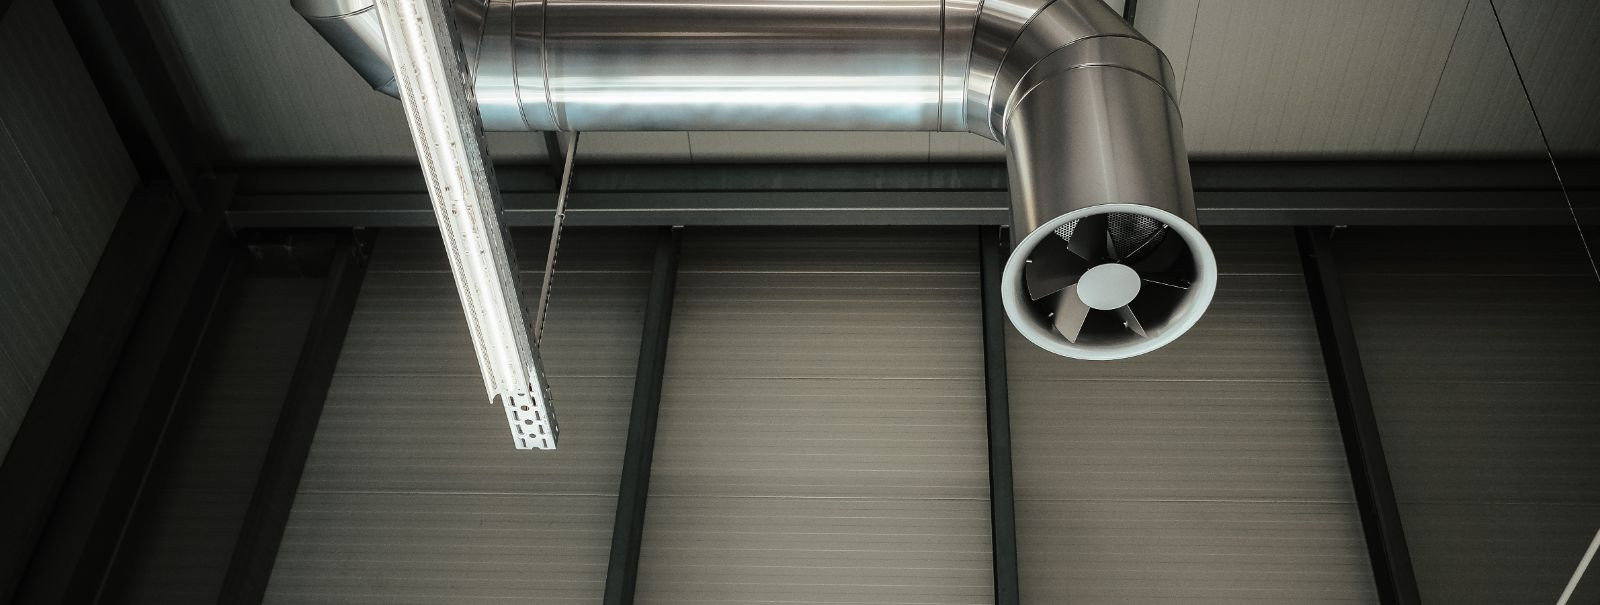 Tunnuste mõistmine, mis näitavad teie ventilatsioonisüsteemi puhastamise vajadust, on oluline tervisliku sisekeskkonna säilitamiseks. Hästi hooldatud süsteem ta